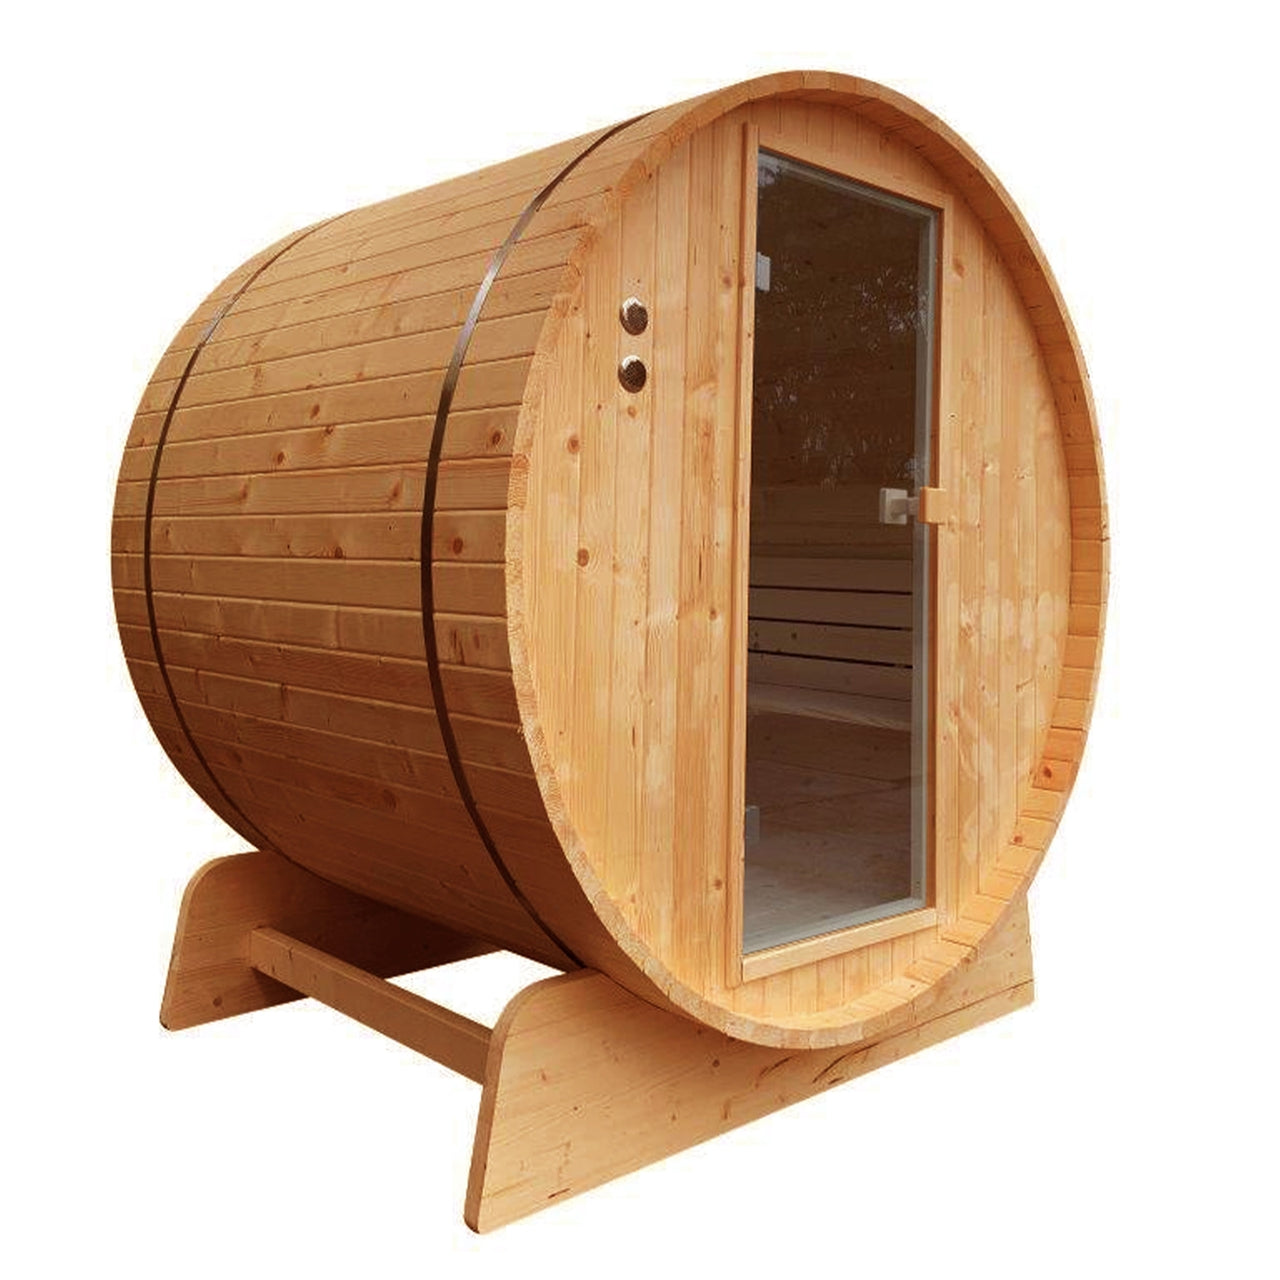 Aleko Outdoor Rustic Cedar Barrel Steam Sauna with Bitumen Shingle Roofing - 8 Person